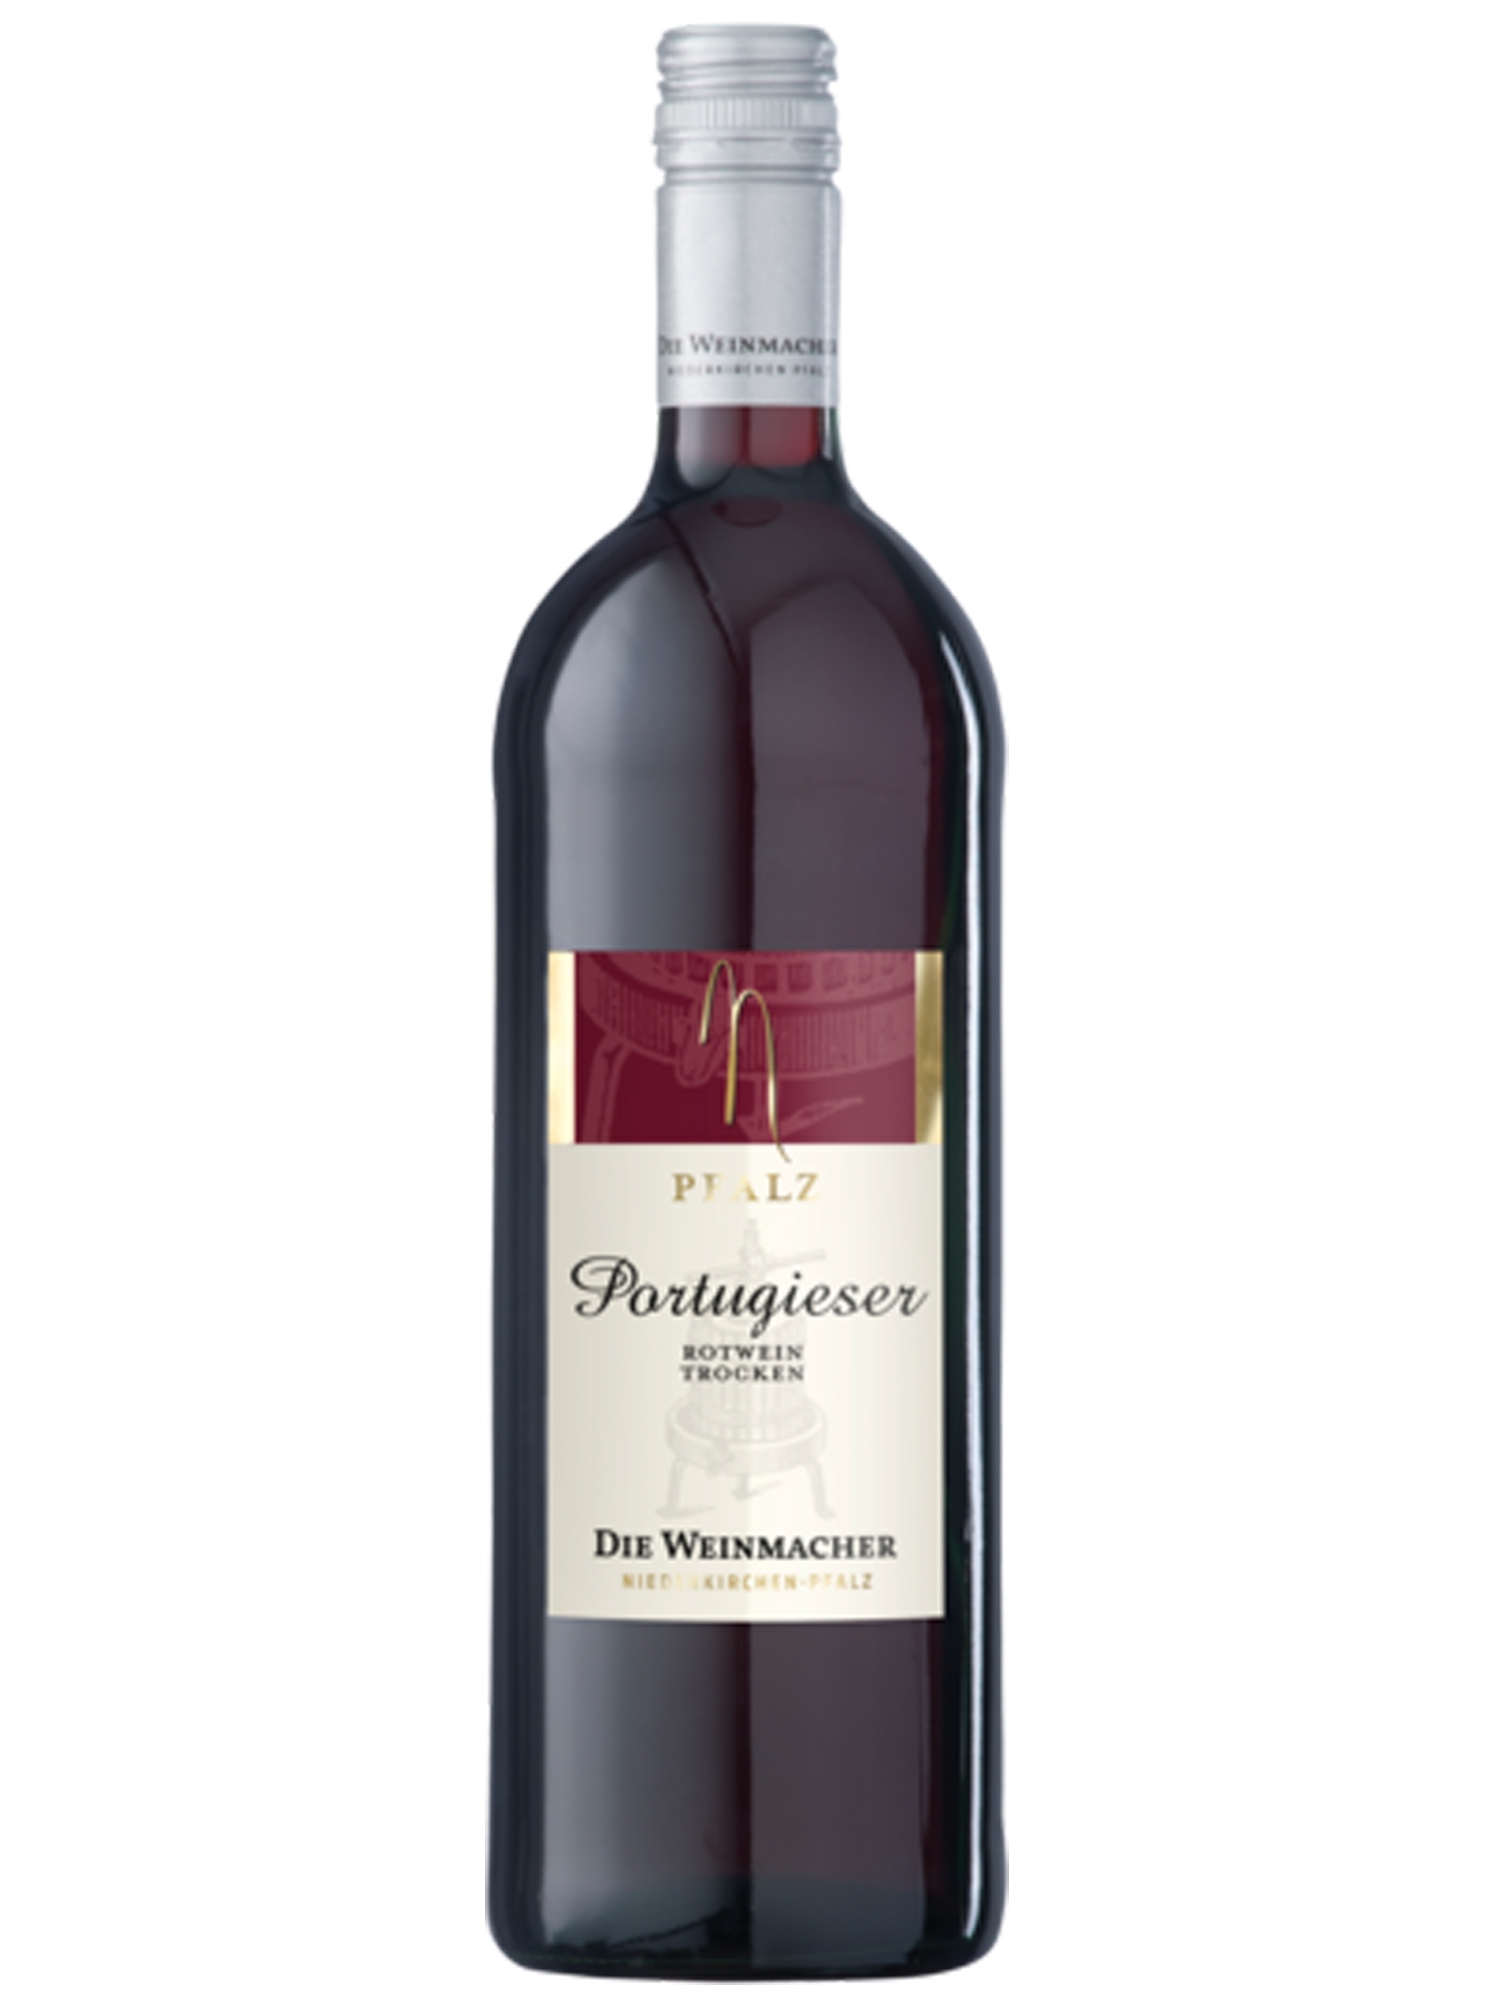 Portugieser Rotwein trocken - Die Weinmacher | Pfalz Wein Online